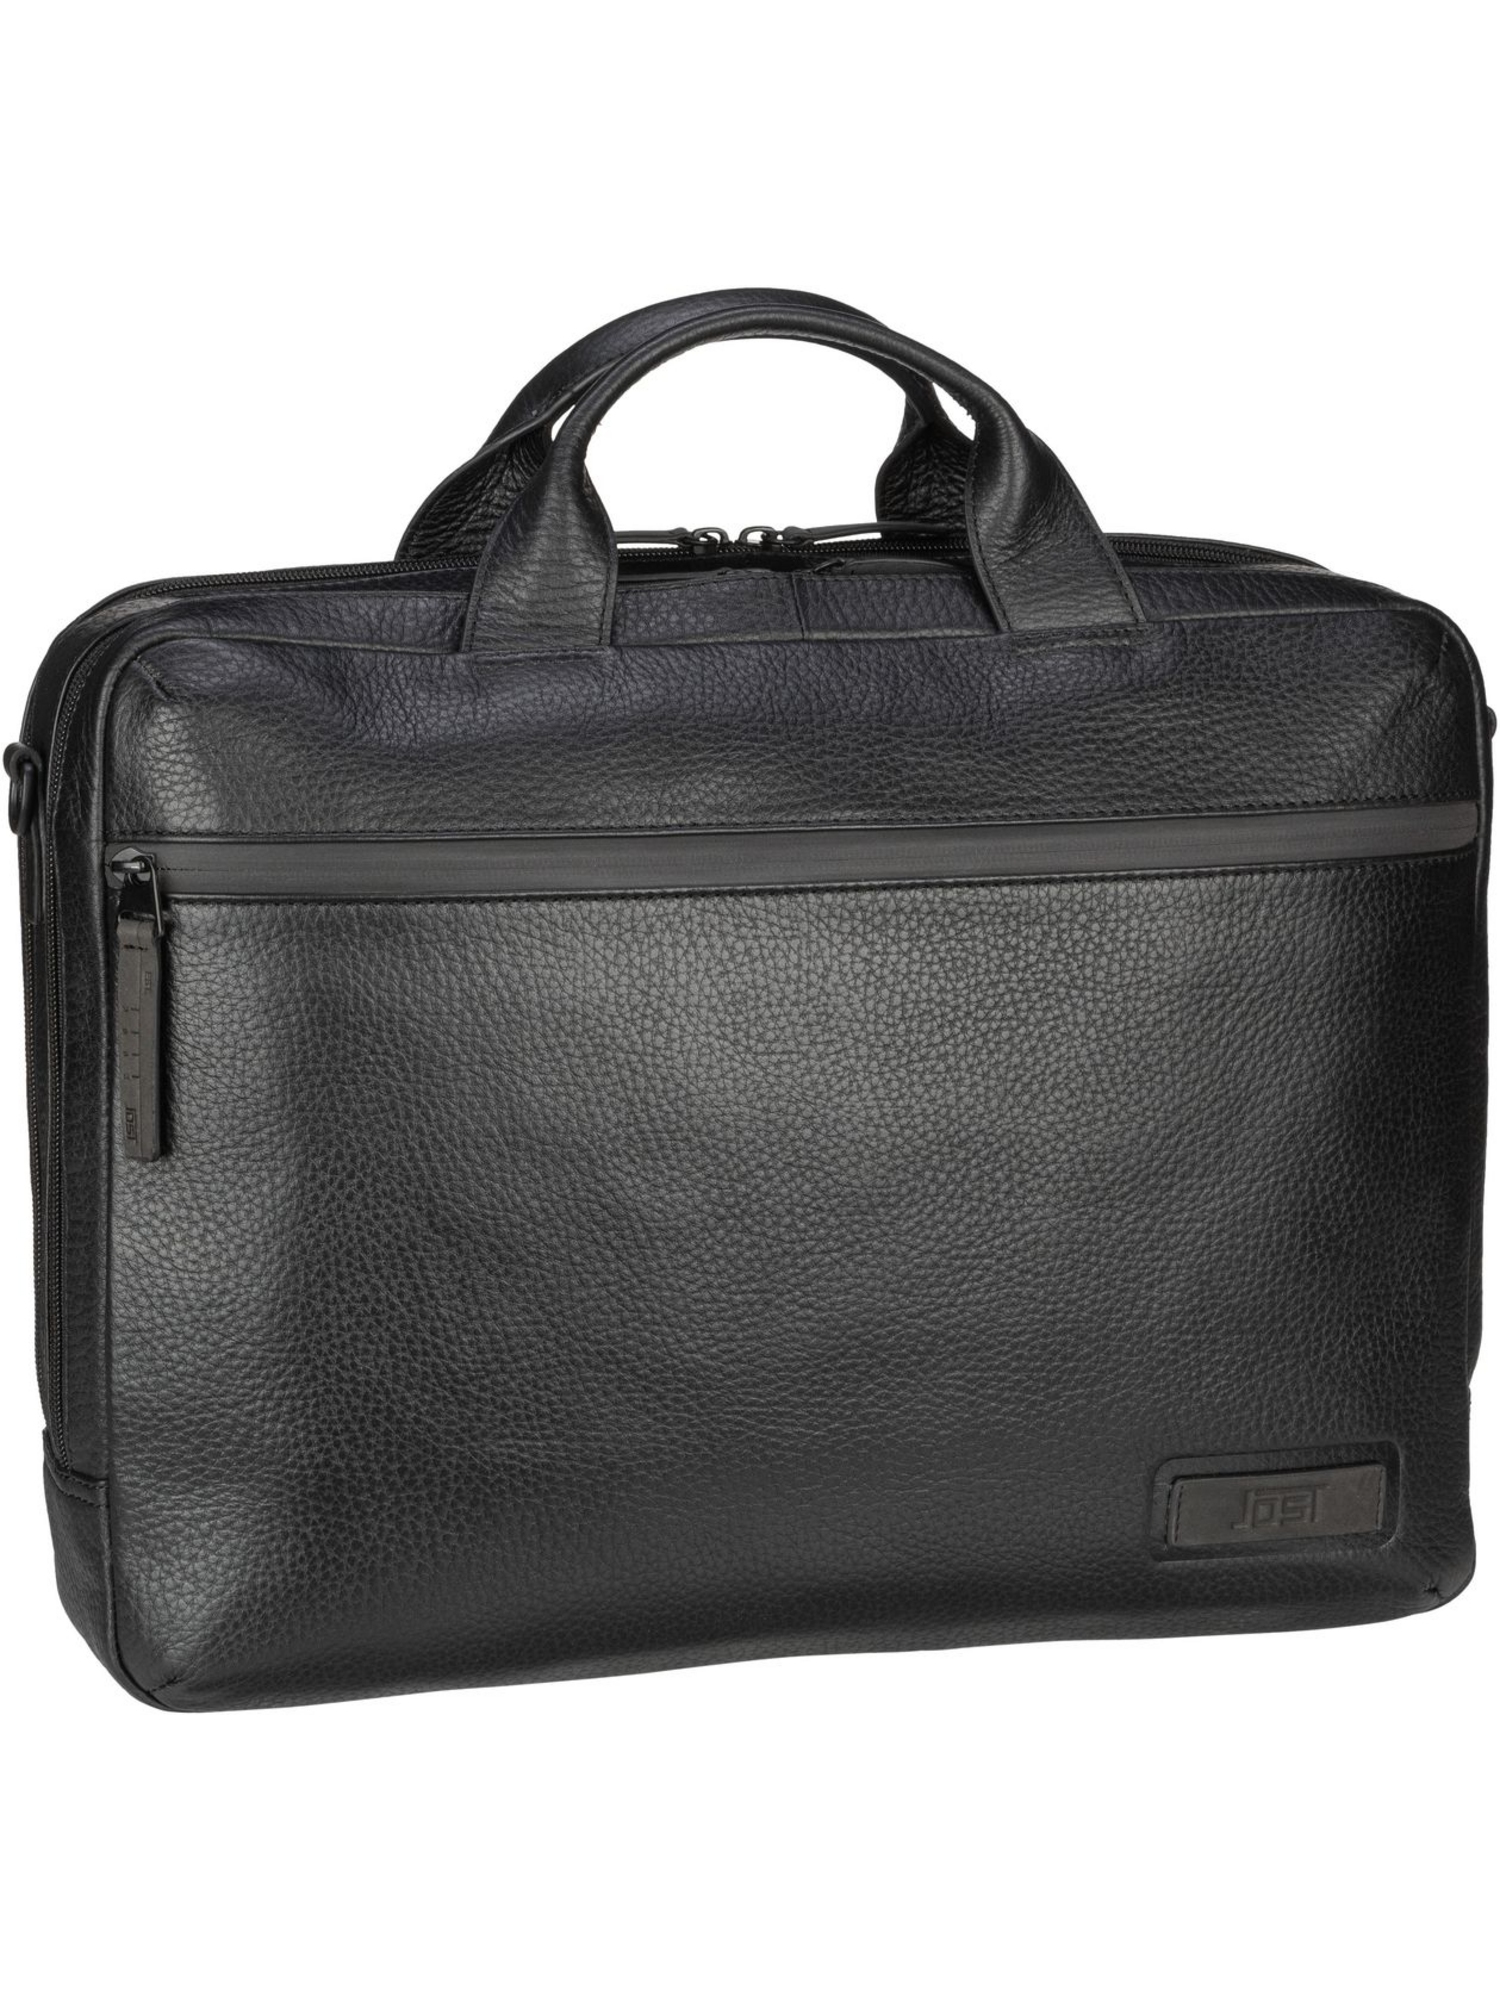 Сумка для ноутбука Jost Stockholm Business Bag L 2 Comp, черный